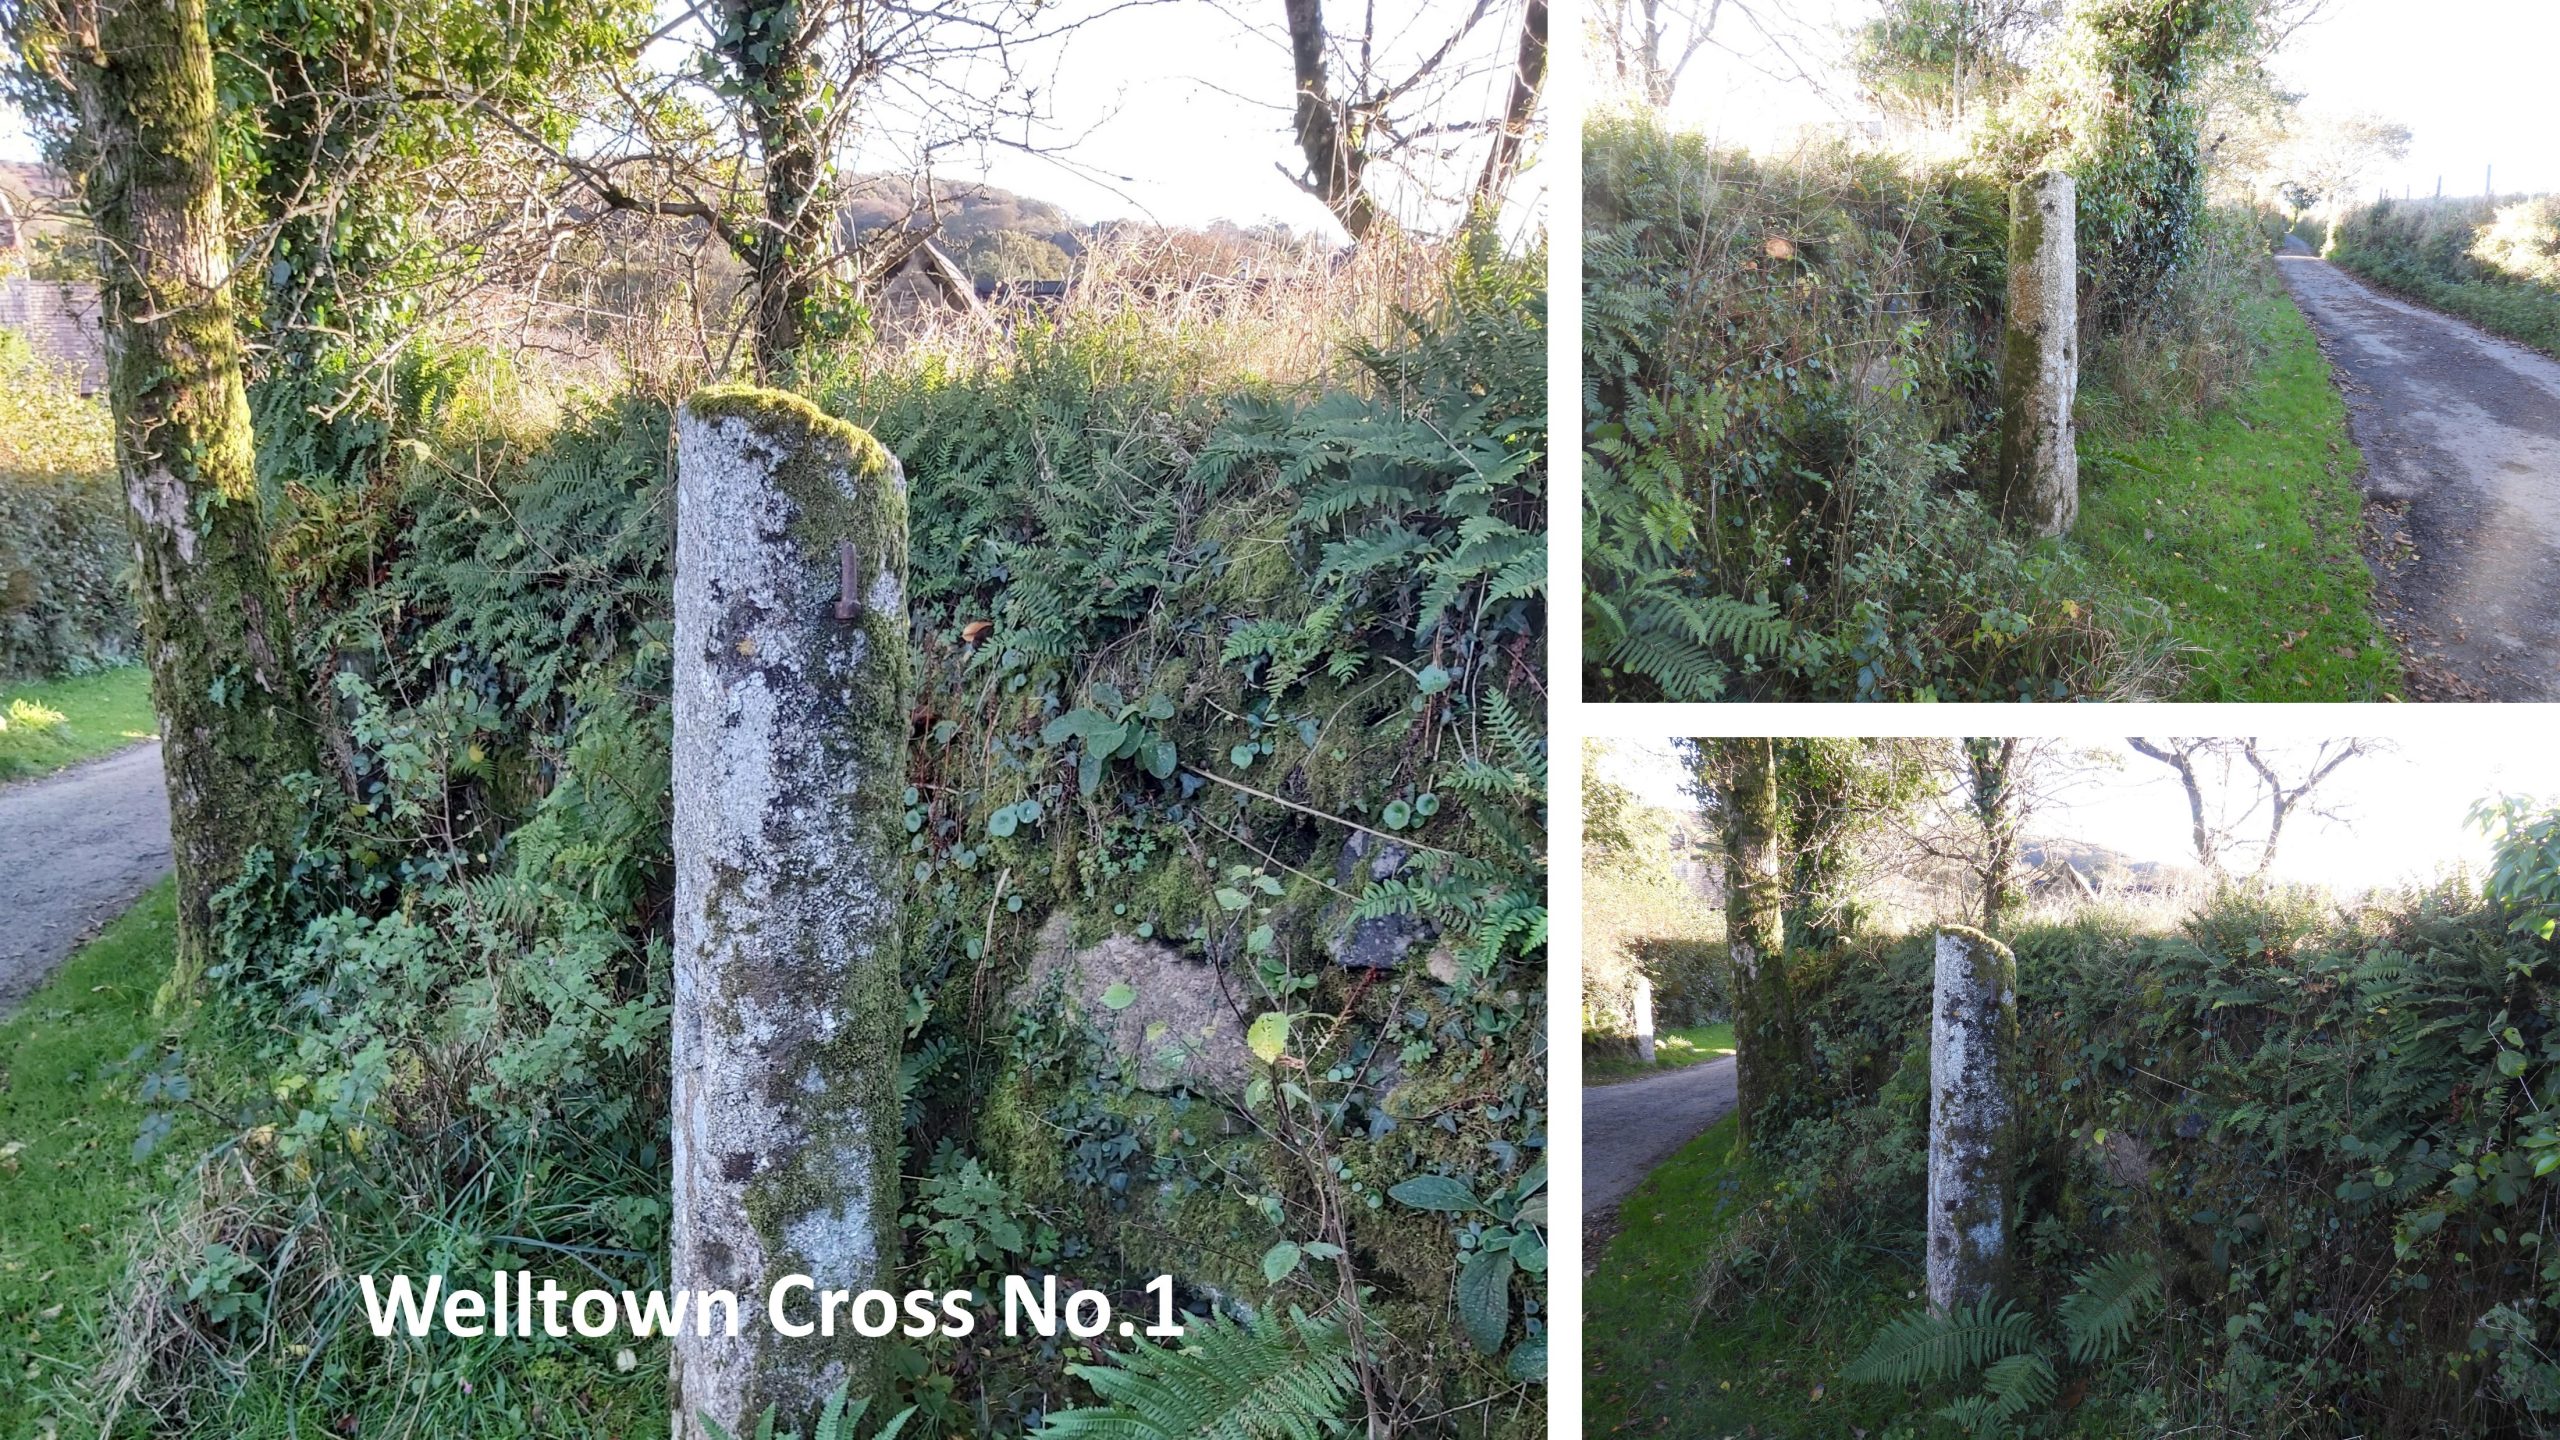 21. Welltown Cross No 1